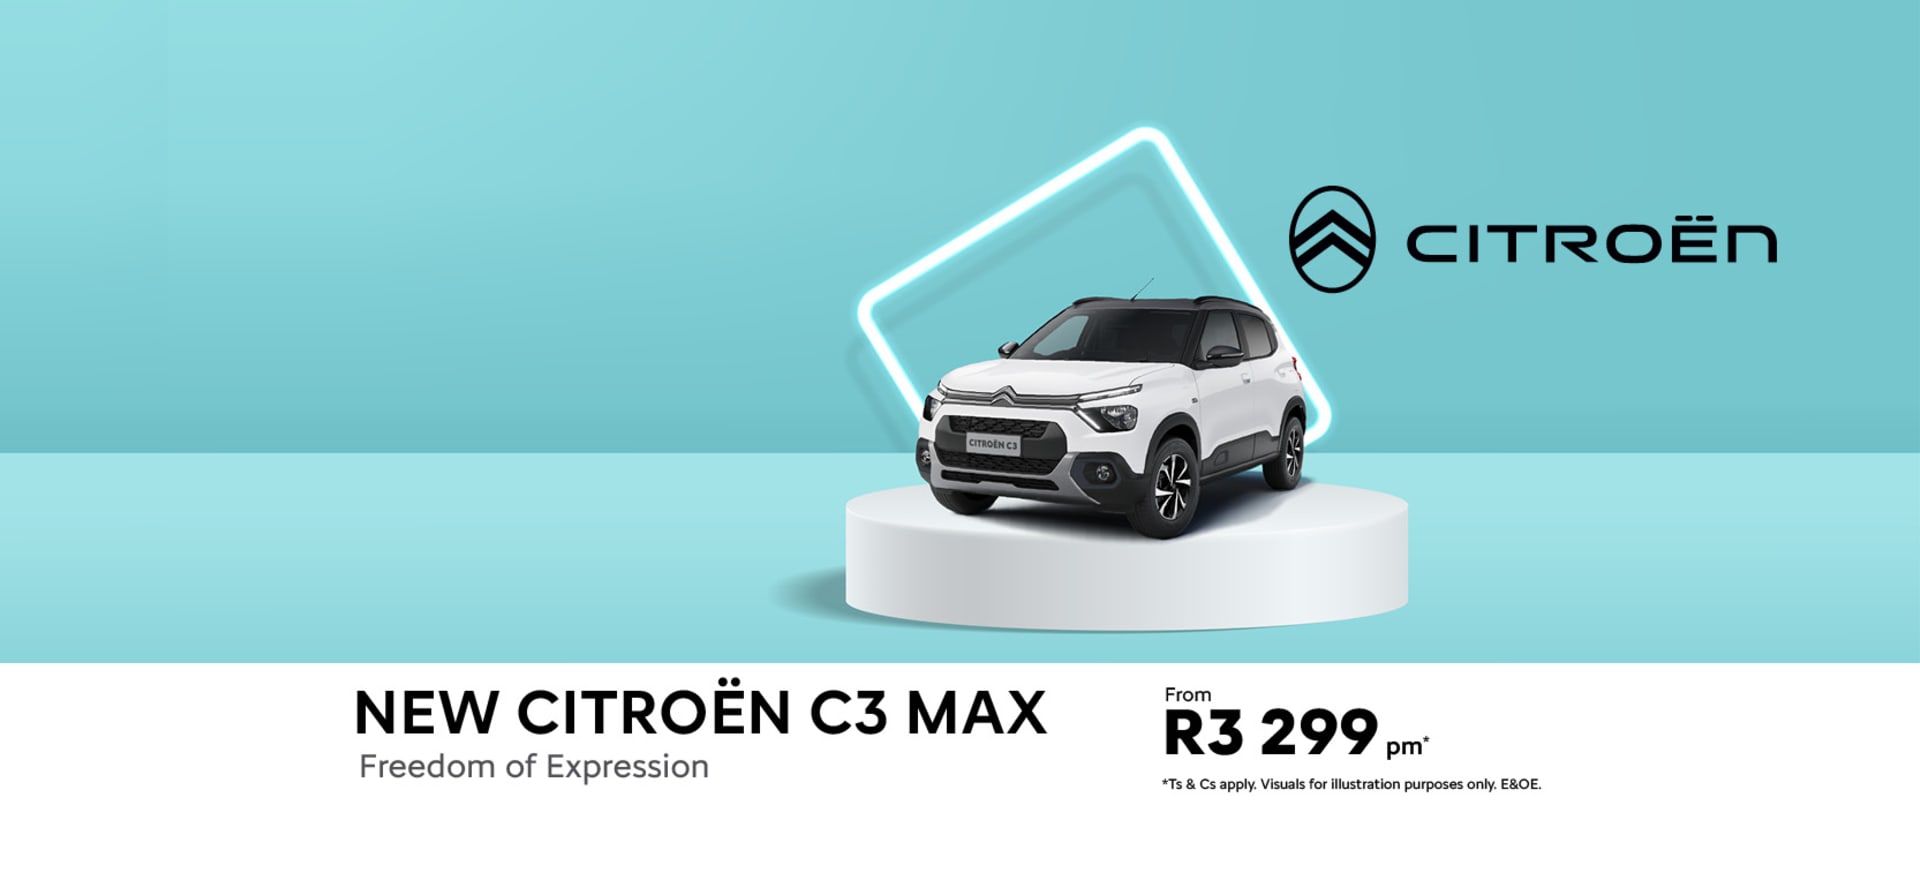 New Citroën C3 Max